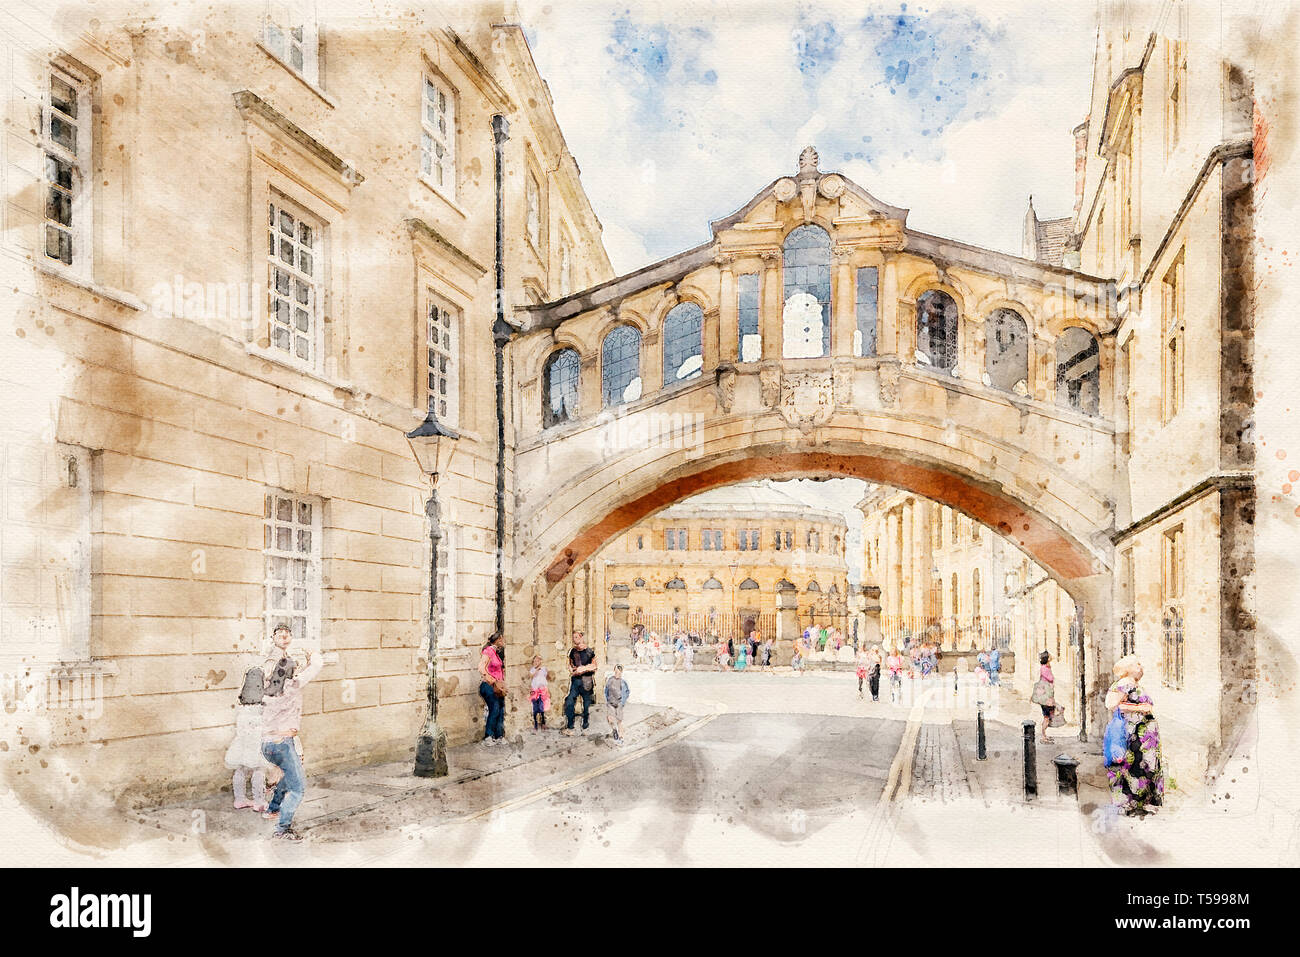 Effet aquarelle à partir d'une photo du Pont des Soupirs dans la ville historique d'Oxford, Oxfordshire, England, UK Banque D'Images